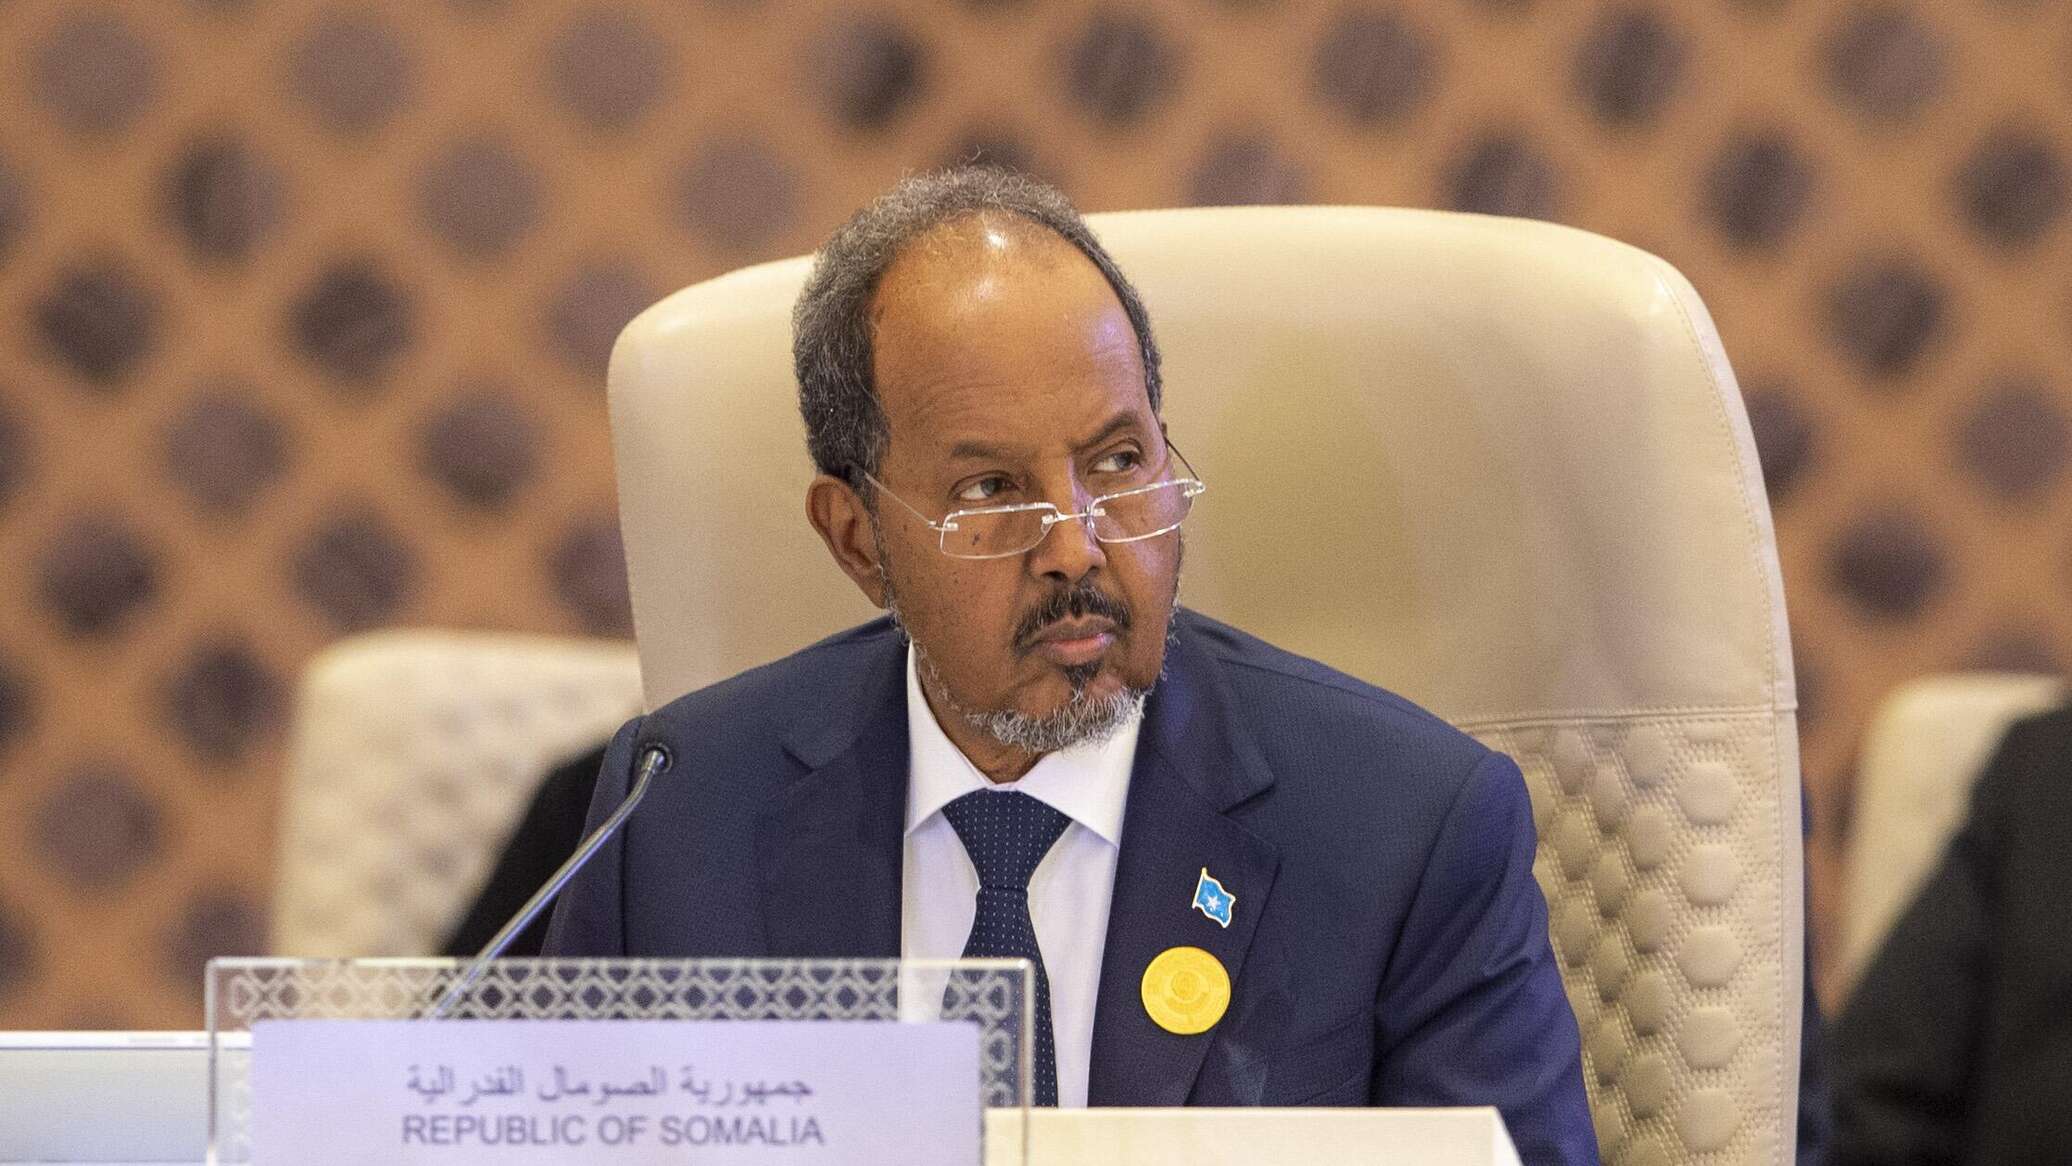 الصومال: لا مجال لوساطة ما لم تنسحب إثيوبيا من الاتفاق مع "أرض الصومال"